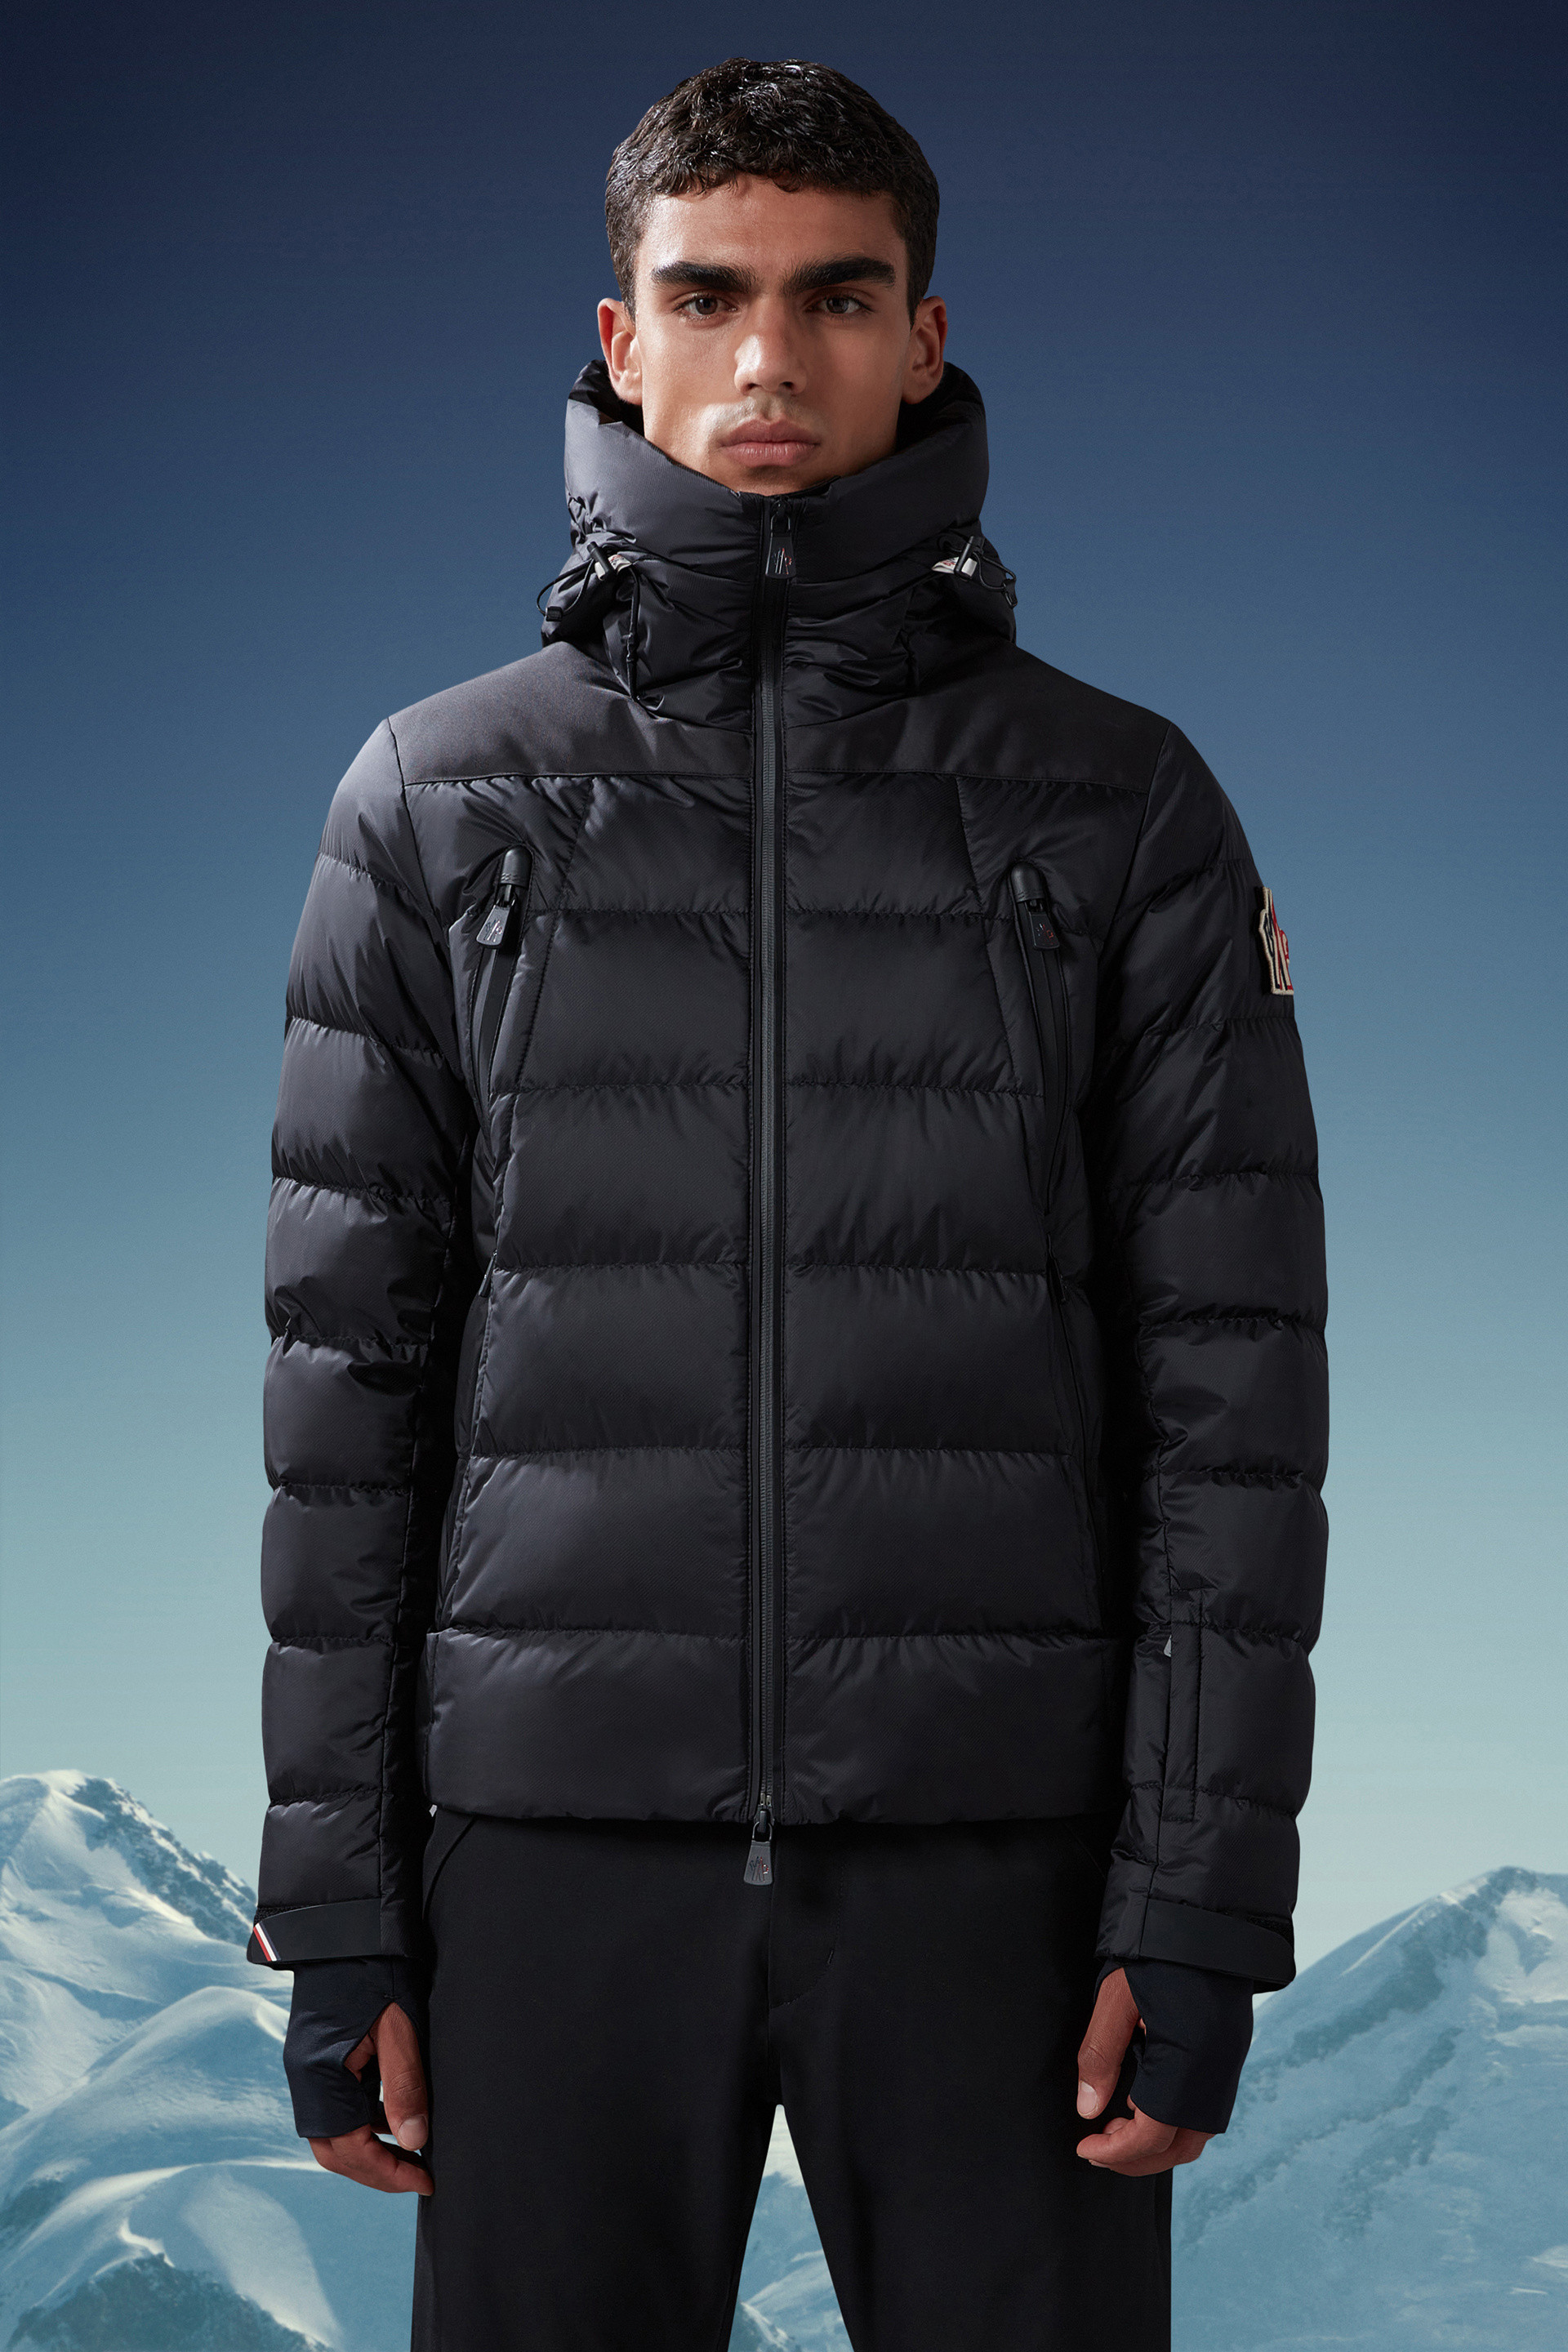 Moncler Grenoble Coraia ski jacket